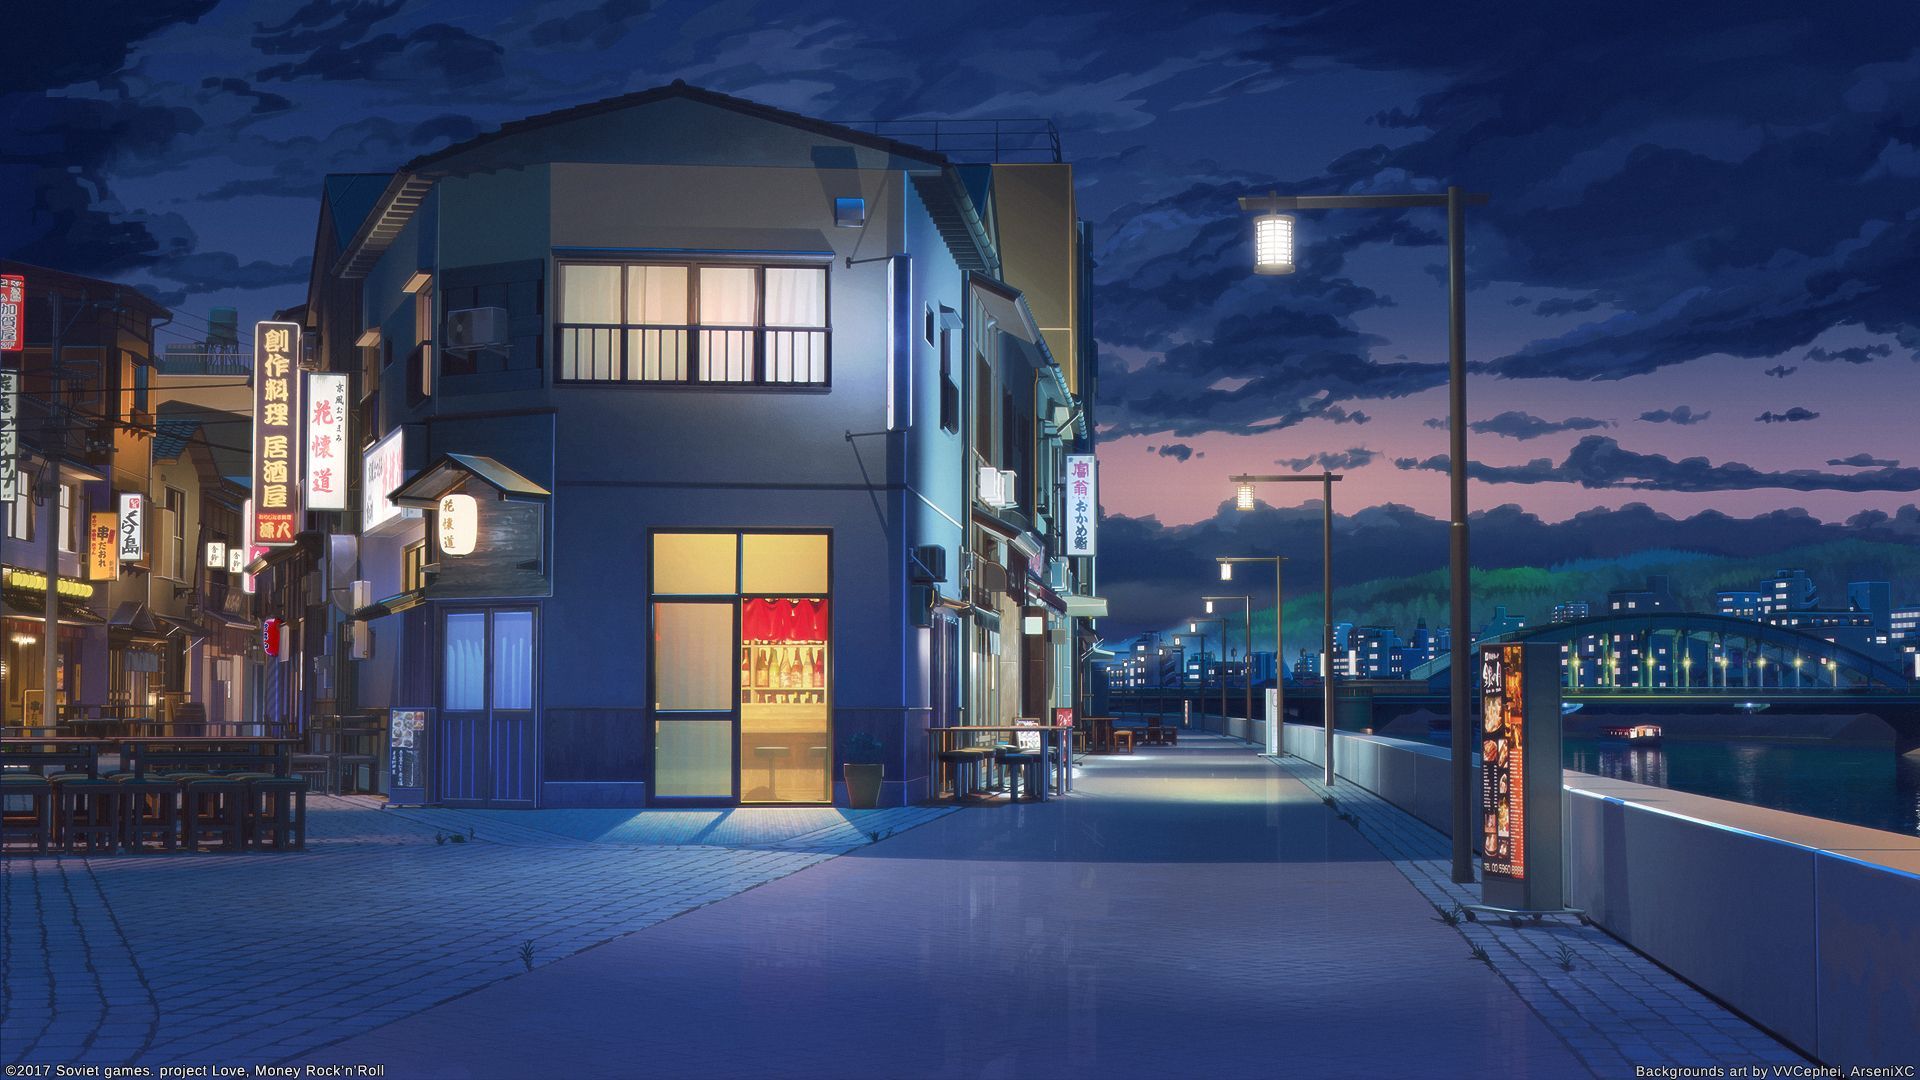 Những đường phố đầy ấn tượng và sắc màu của thế giới anime đang chờ đón bạn khám phá. Với những hình ảnh chân thực và đẹp mắt, việc tìm hiểu và khám phá thế giới anime trong đêm là trải nghiệm tuyệt vời cho những ai yêu thích nghệ thuật.